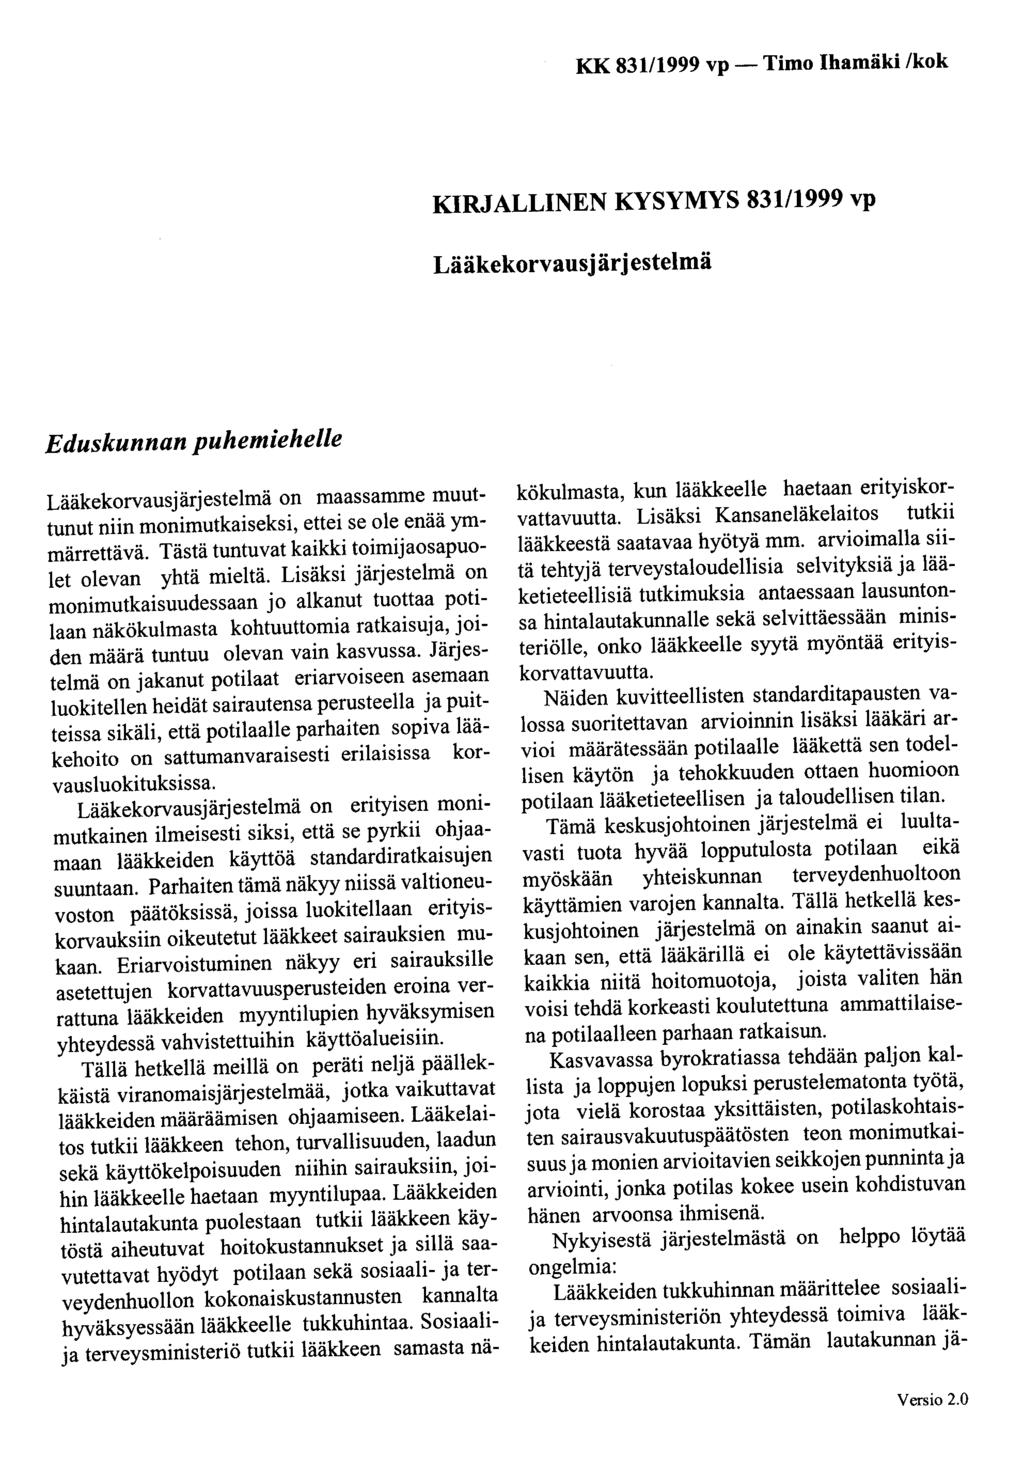 KK 831/1999 vp- Timo Ihamäki /kok KIRJALLINEN KYSYMYS 83111999 vp Lääkekorvausjärjestelmä Eduskunnan puhemiehelle Lääkekorvausjärjestelmä on maassamme muuttunut niin monimutkaiseksi, ettei se ole